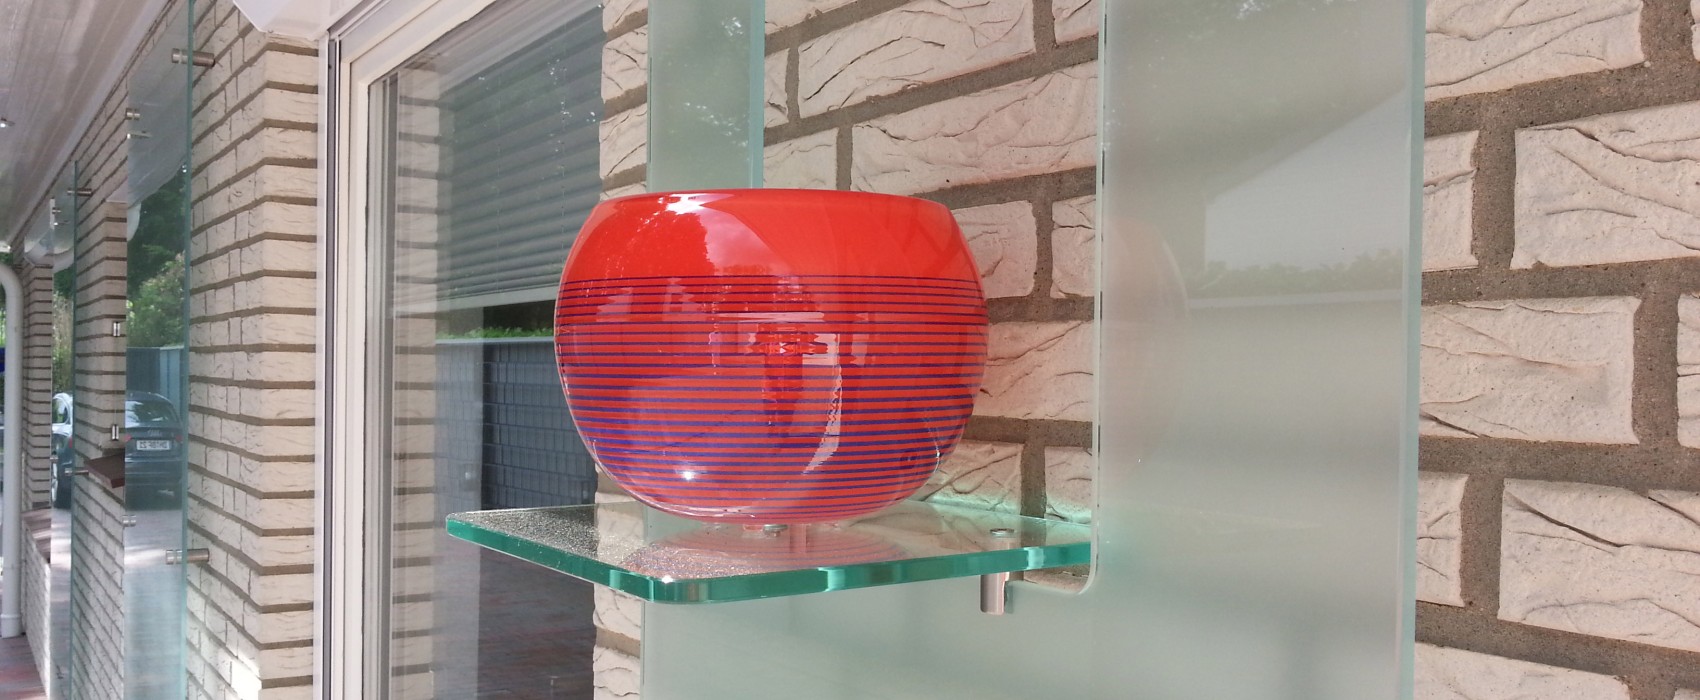 glasvase outdoor Glasregegal milchglas glaserei richter